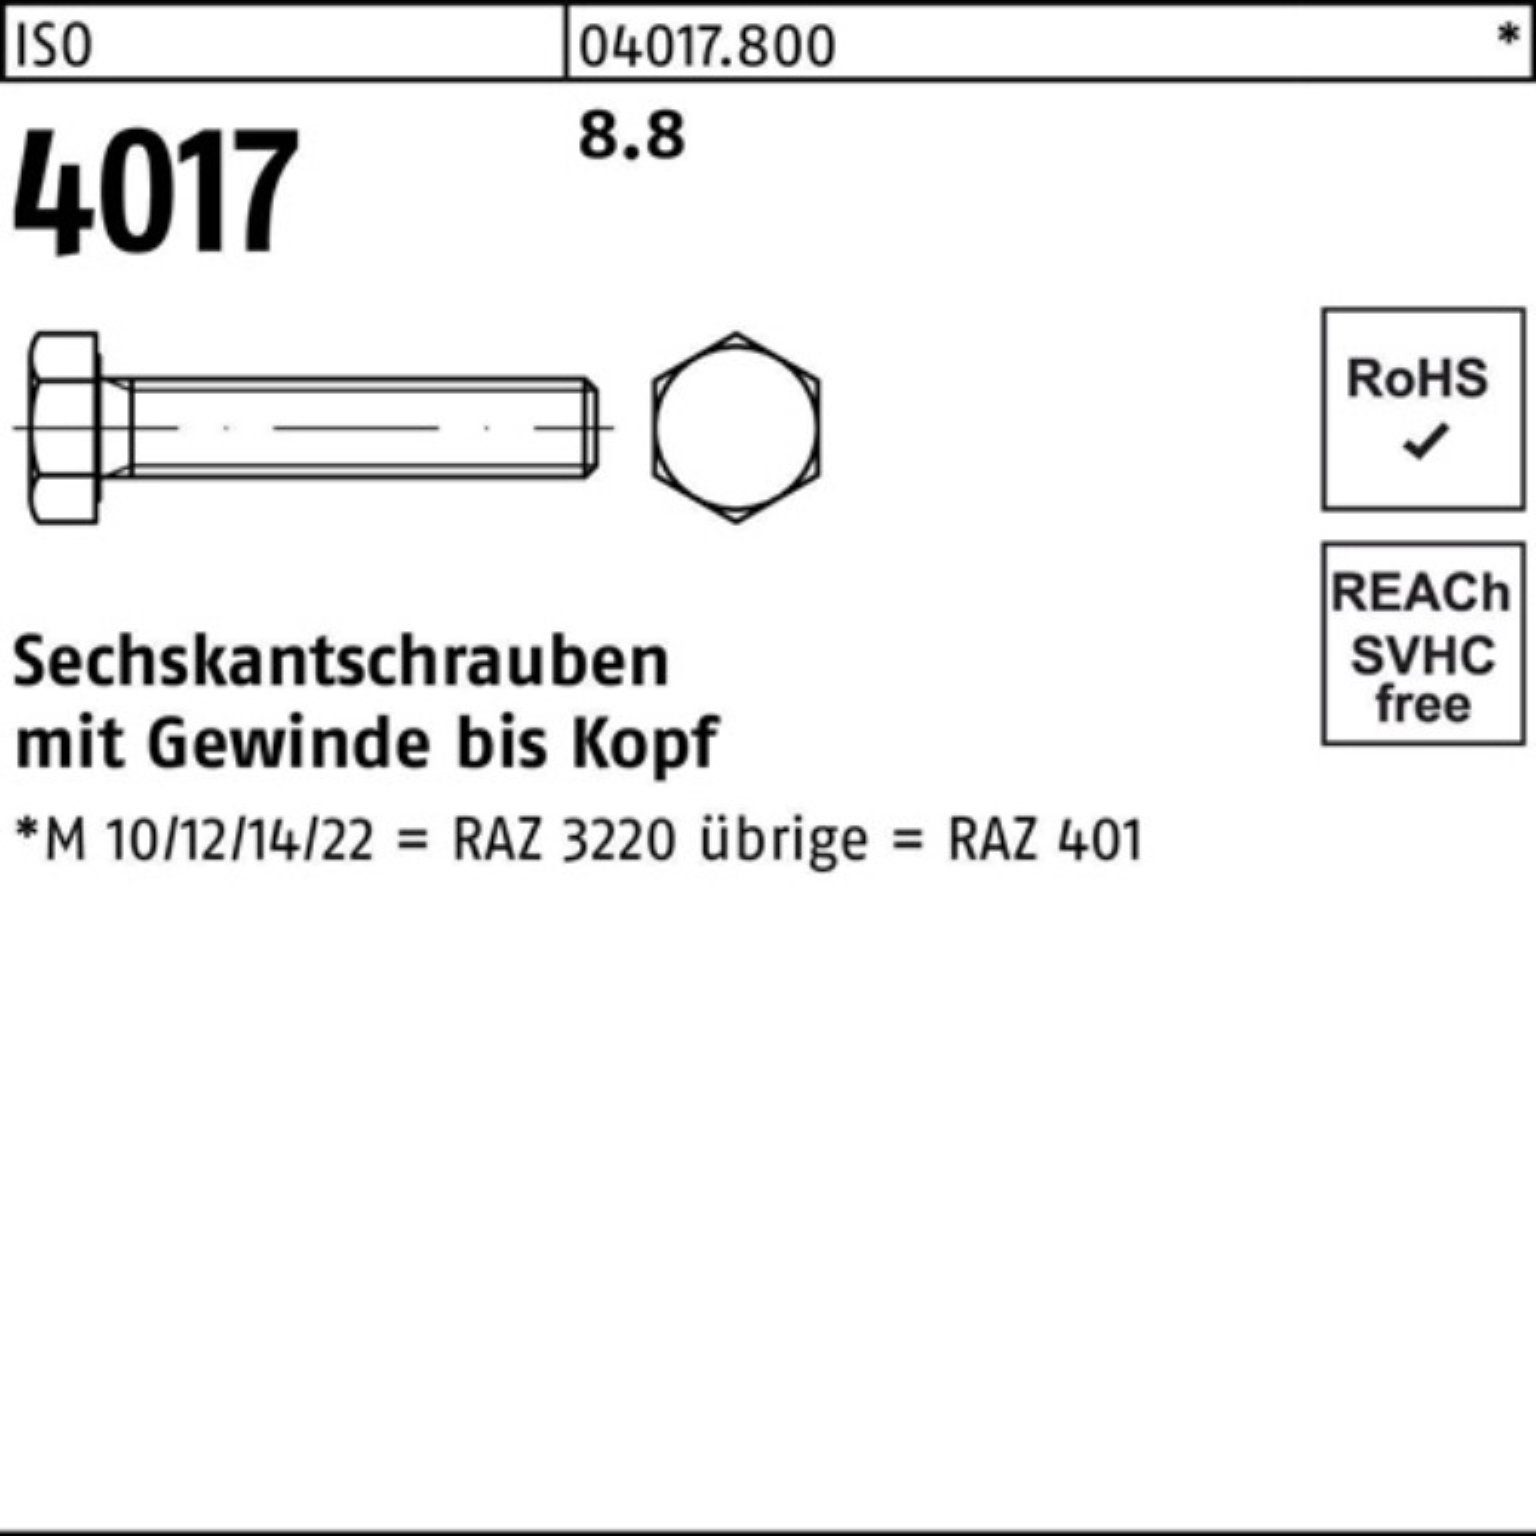 M4x 4017 401 Sechskantschraube Bufab Stück ISO ISO VG 100er Sechskantschraube 8.8 Pack 70 100